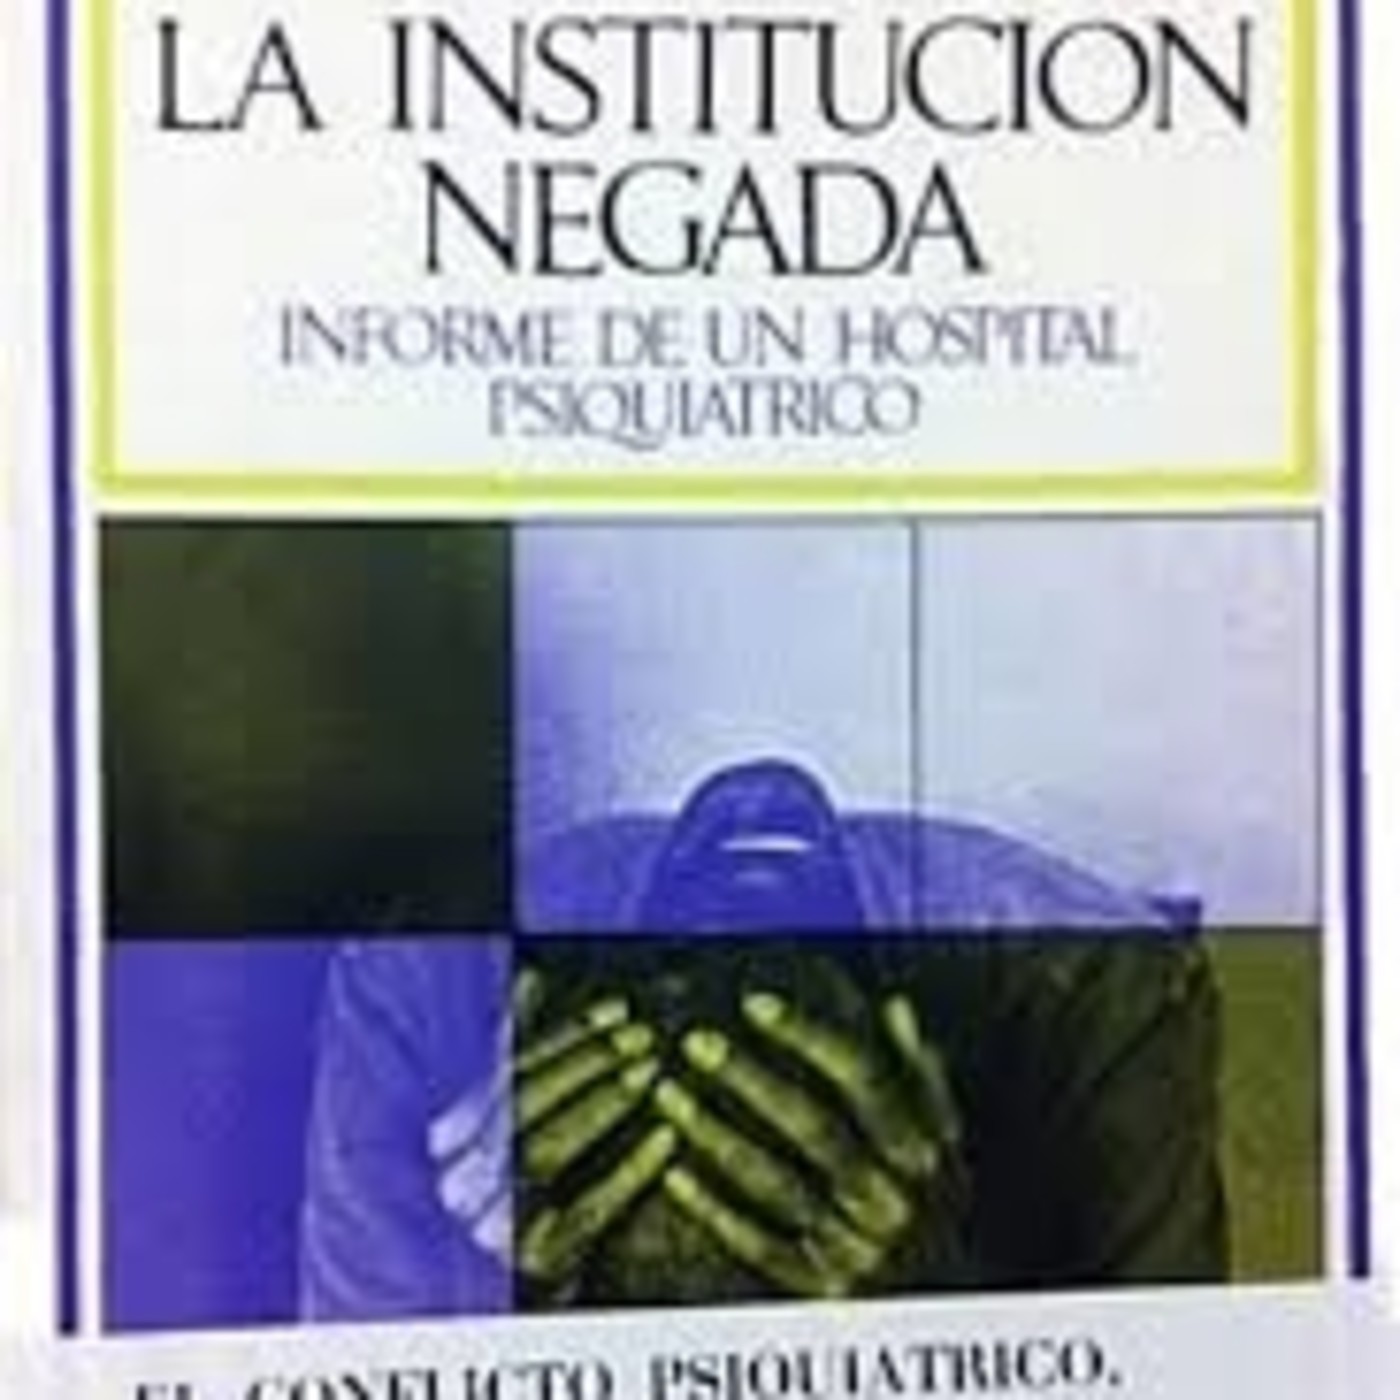 202- Especiales Franco Basaglia: 'La institución negada'